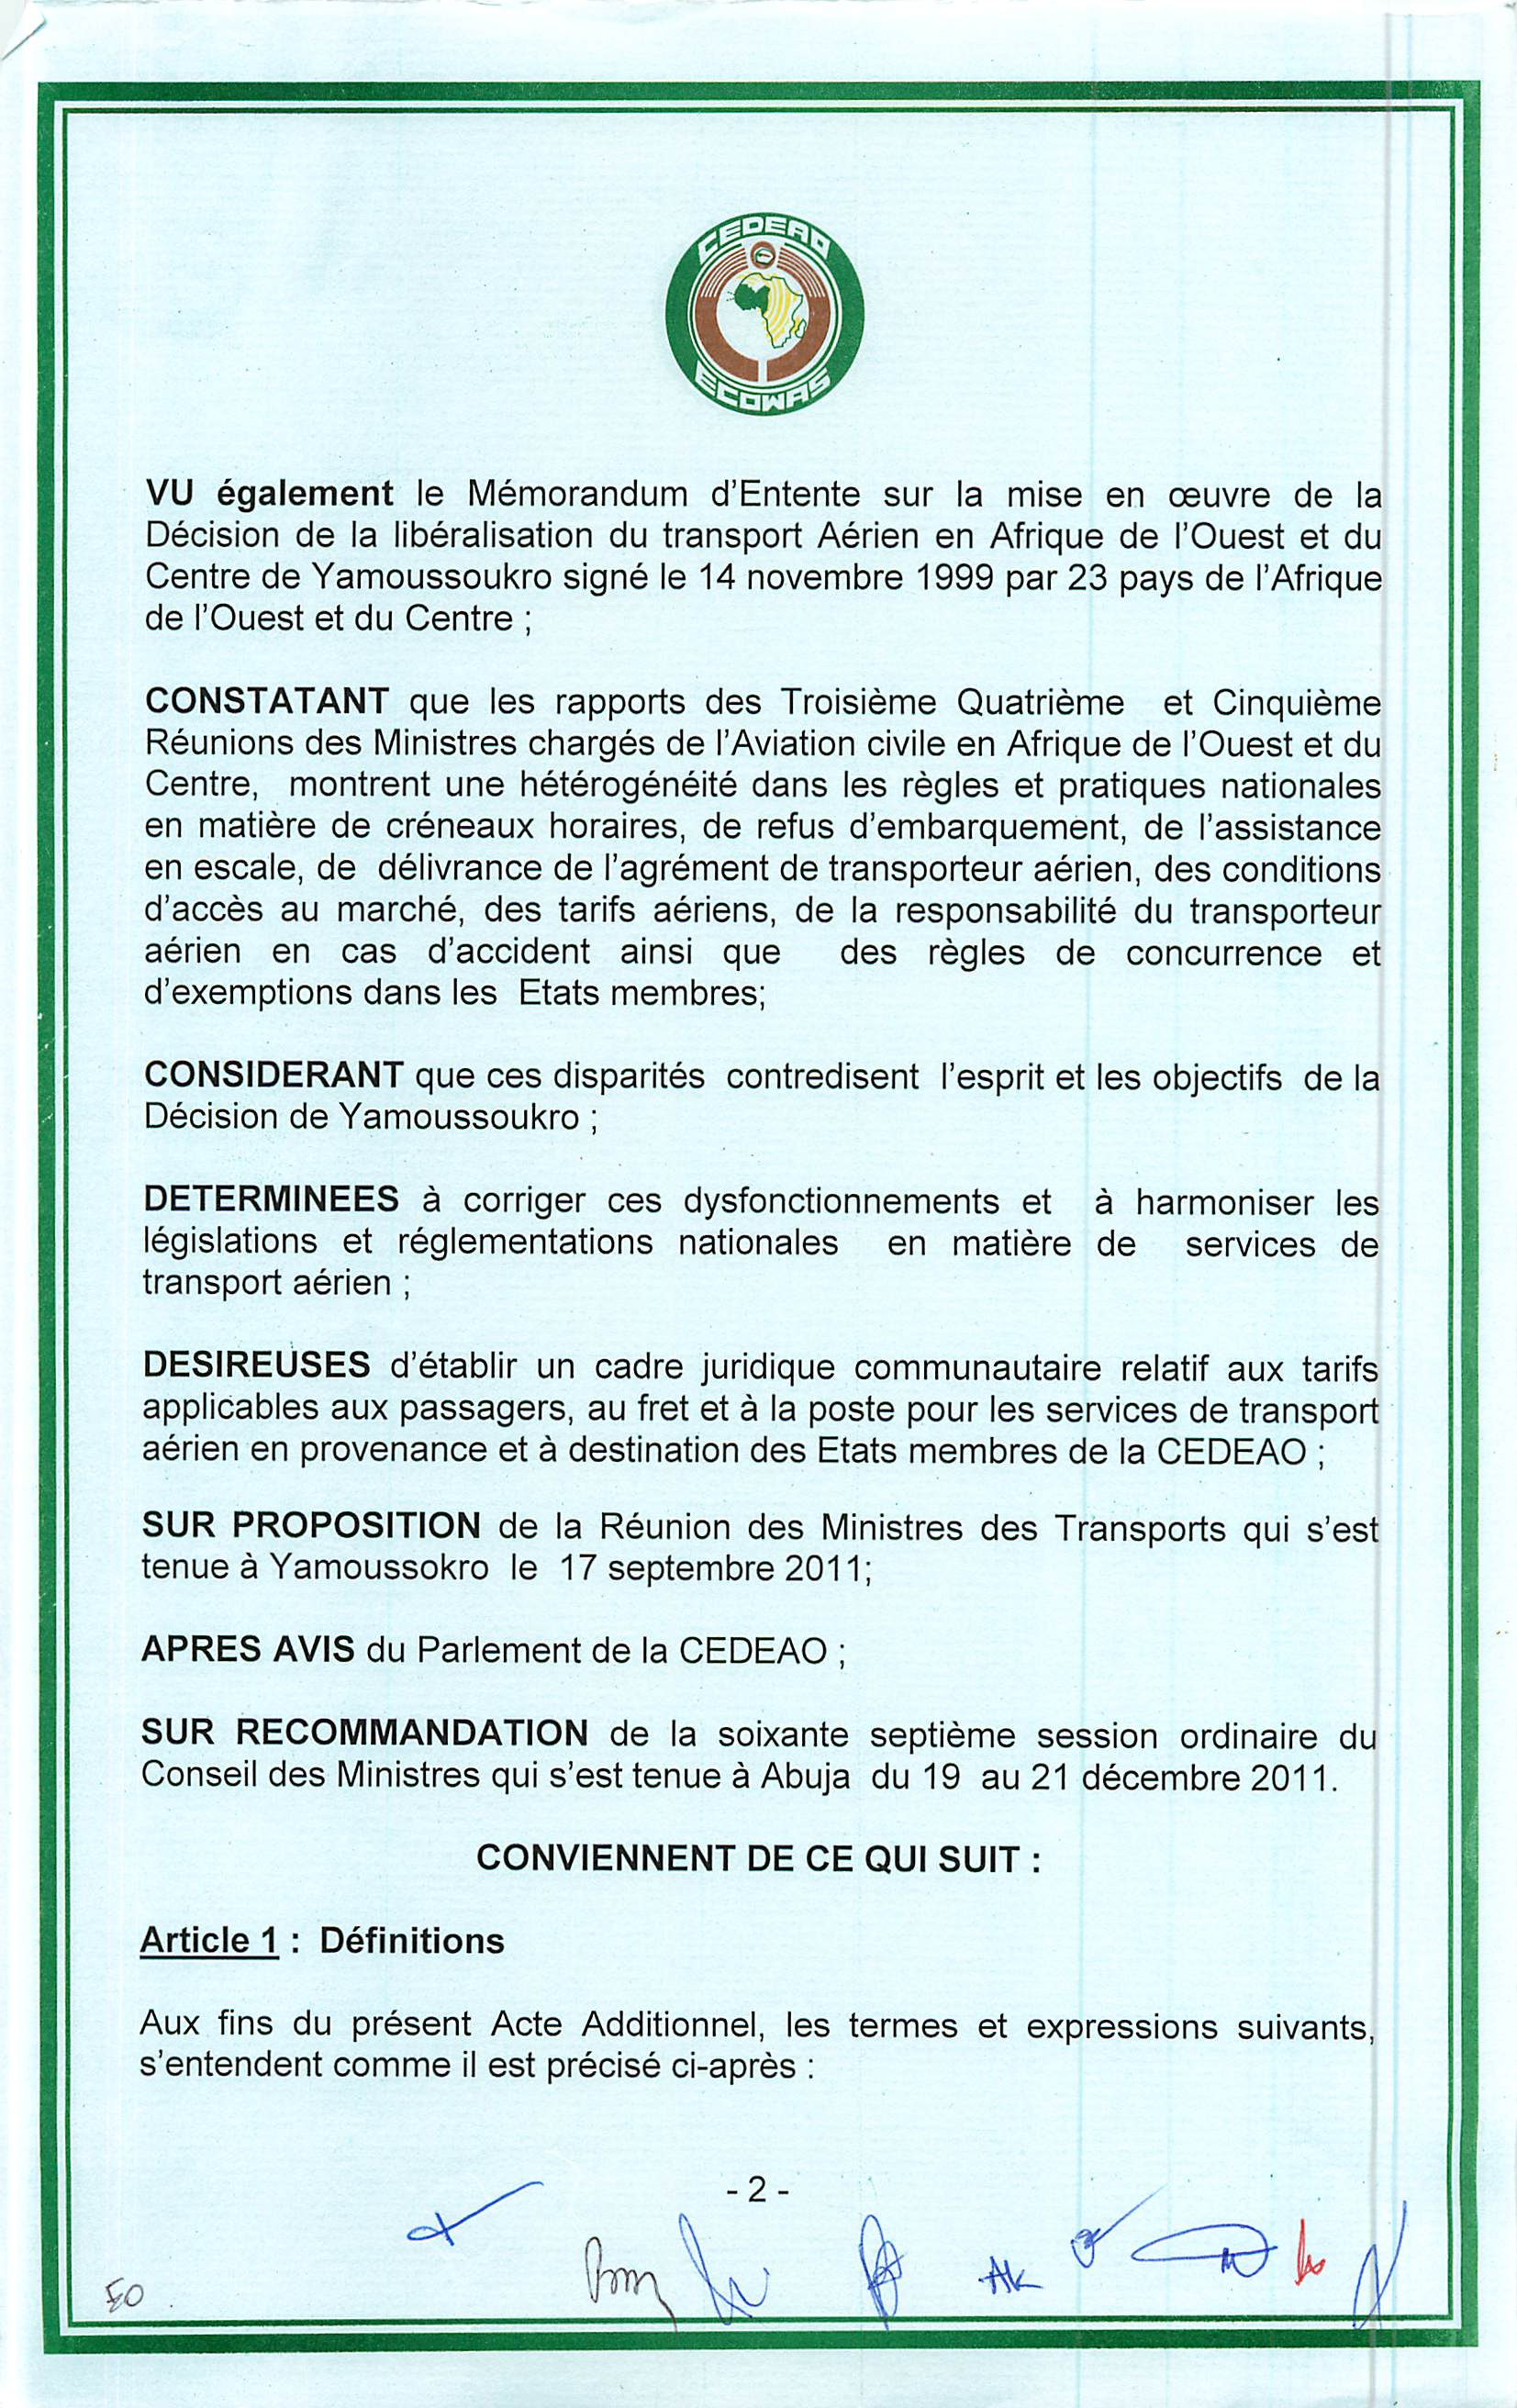 VU egalement le Memorandum d'entente sur la mise en oeuvre de la Decision de la liberalisation du transport Aerien en Afrique de I'Ouest et du Centre de Yamoussoukro signe le 14 novembre 1999 par 23